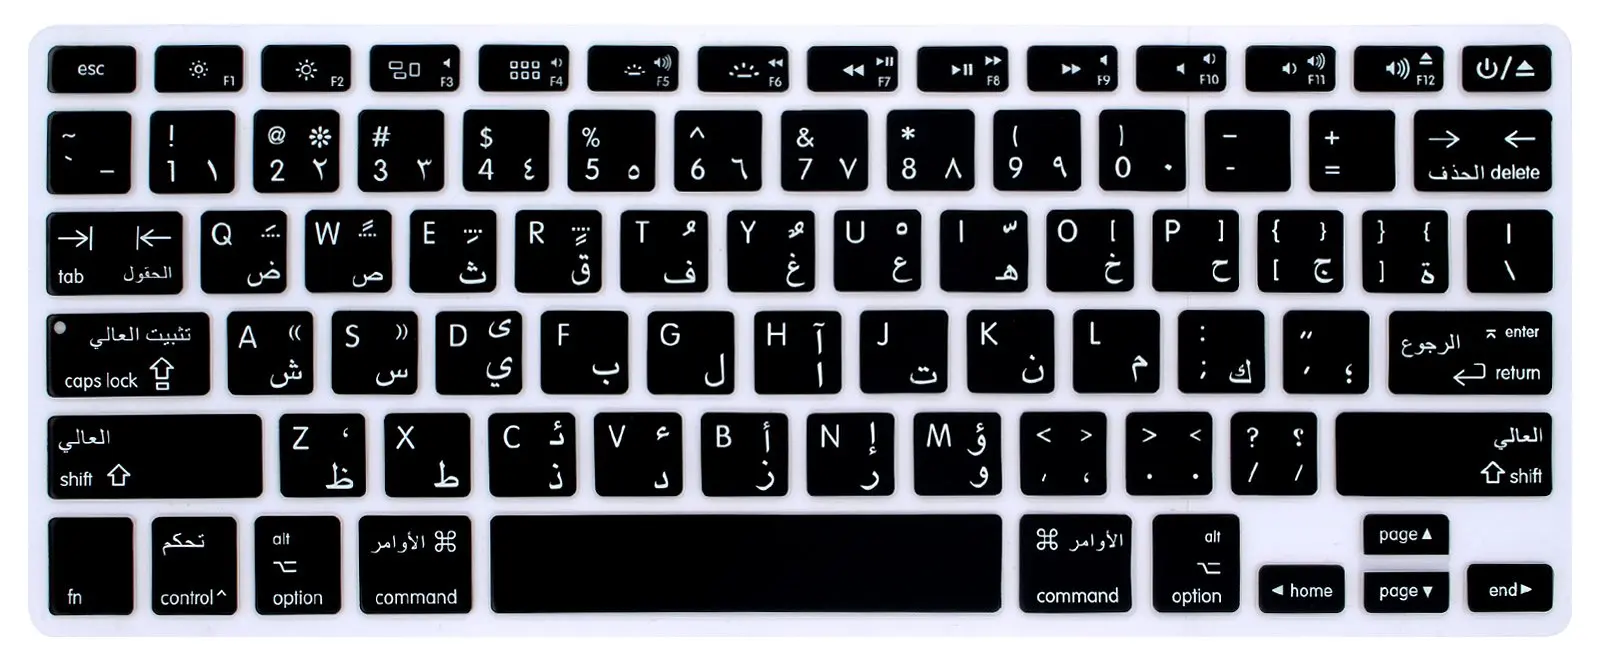 Cheap Arabic Online Keyboard, find Arabic Online Keyboard deals on line